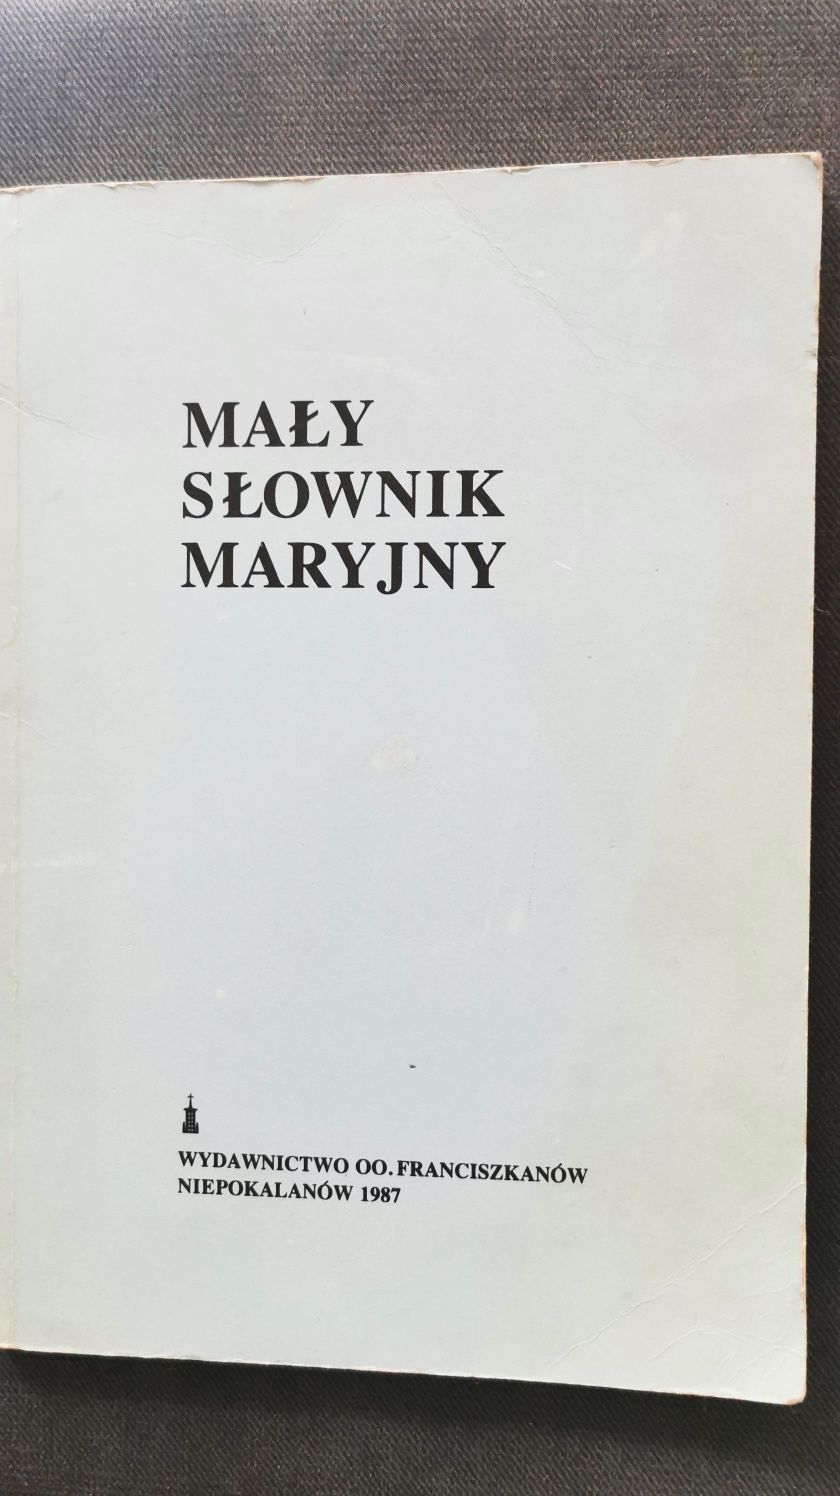 Mały słownik Maryjny
Redakcja Matylda Wiśniewska